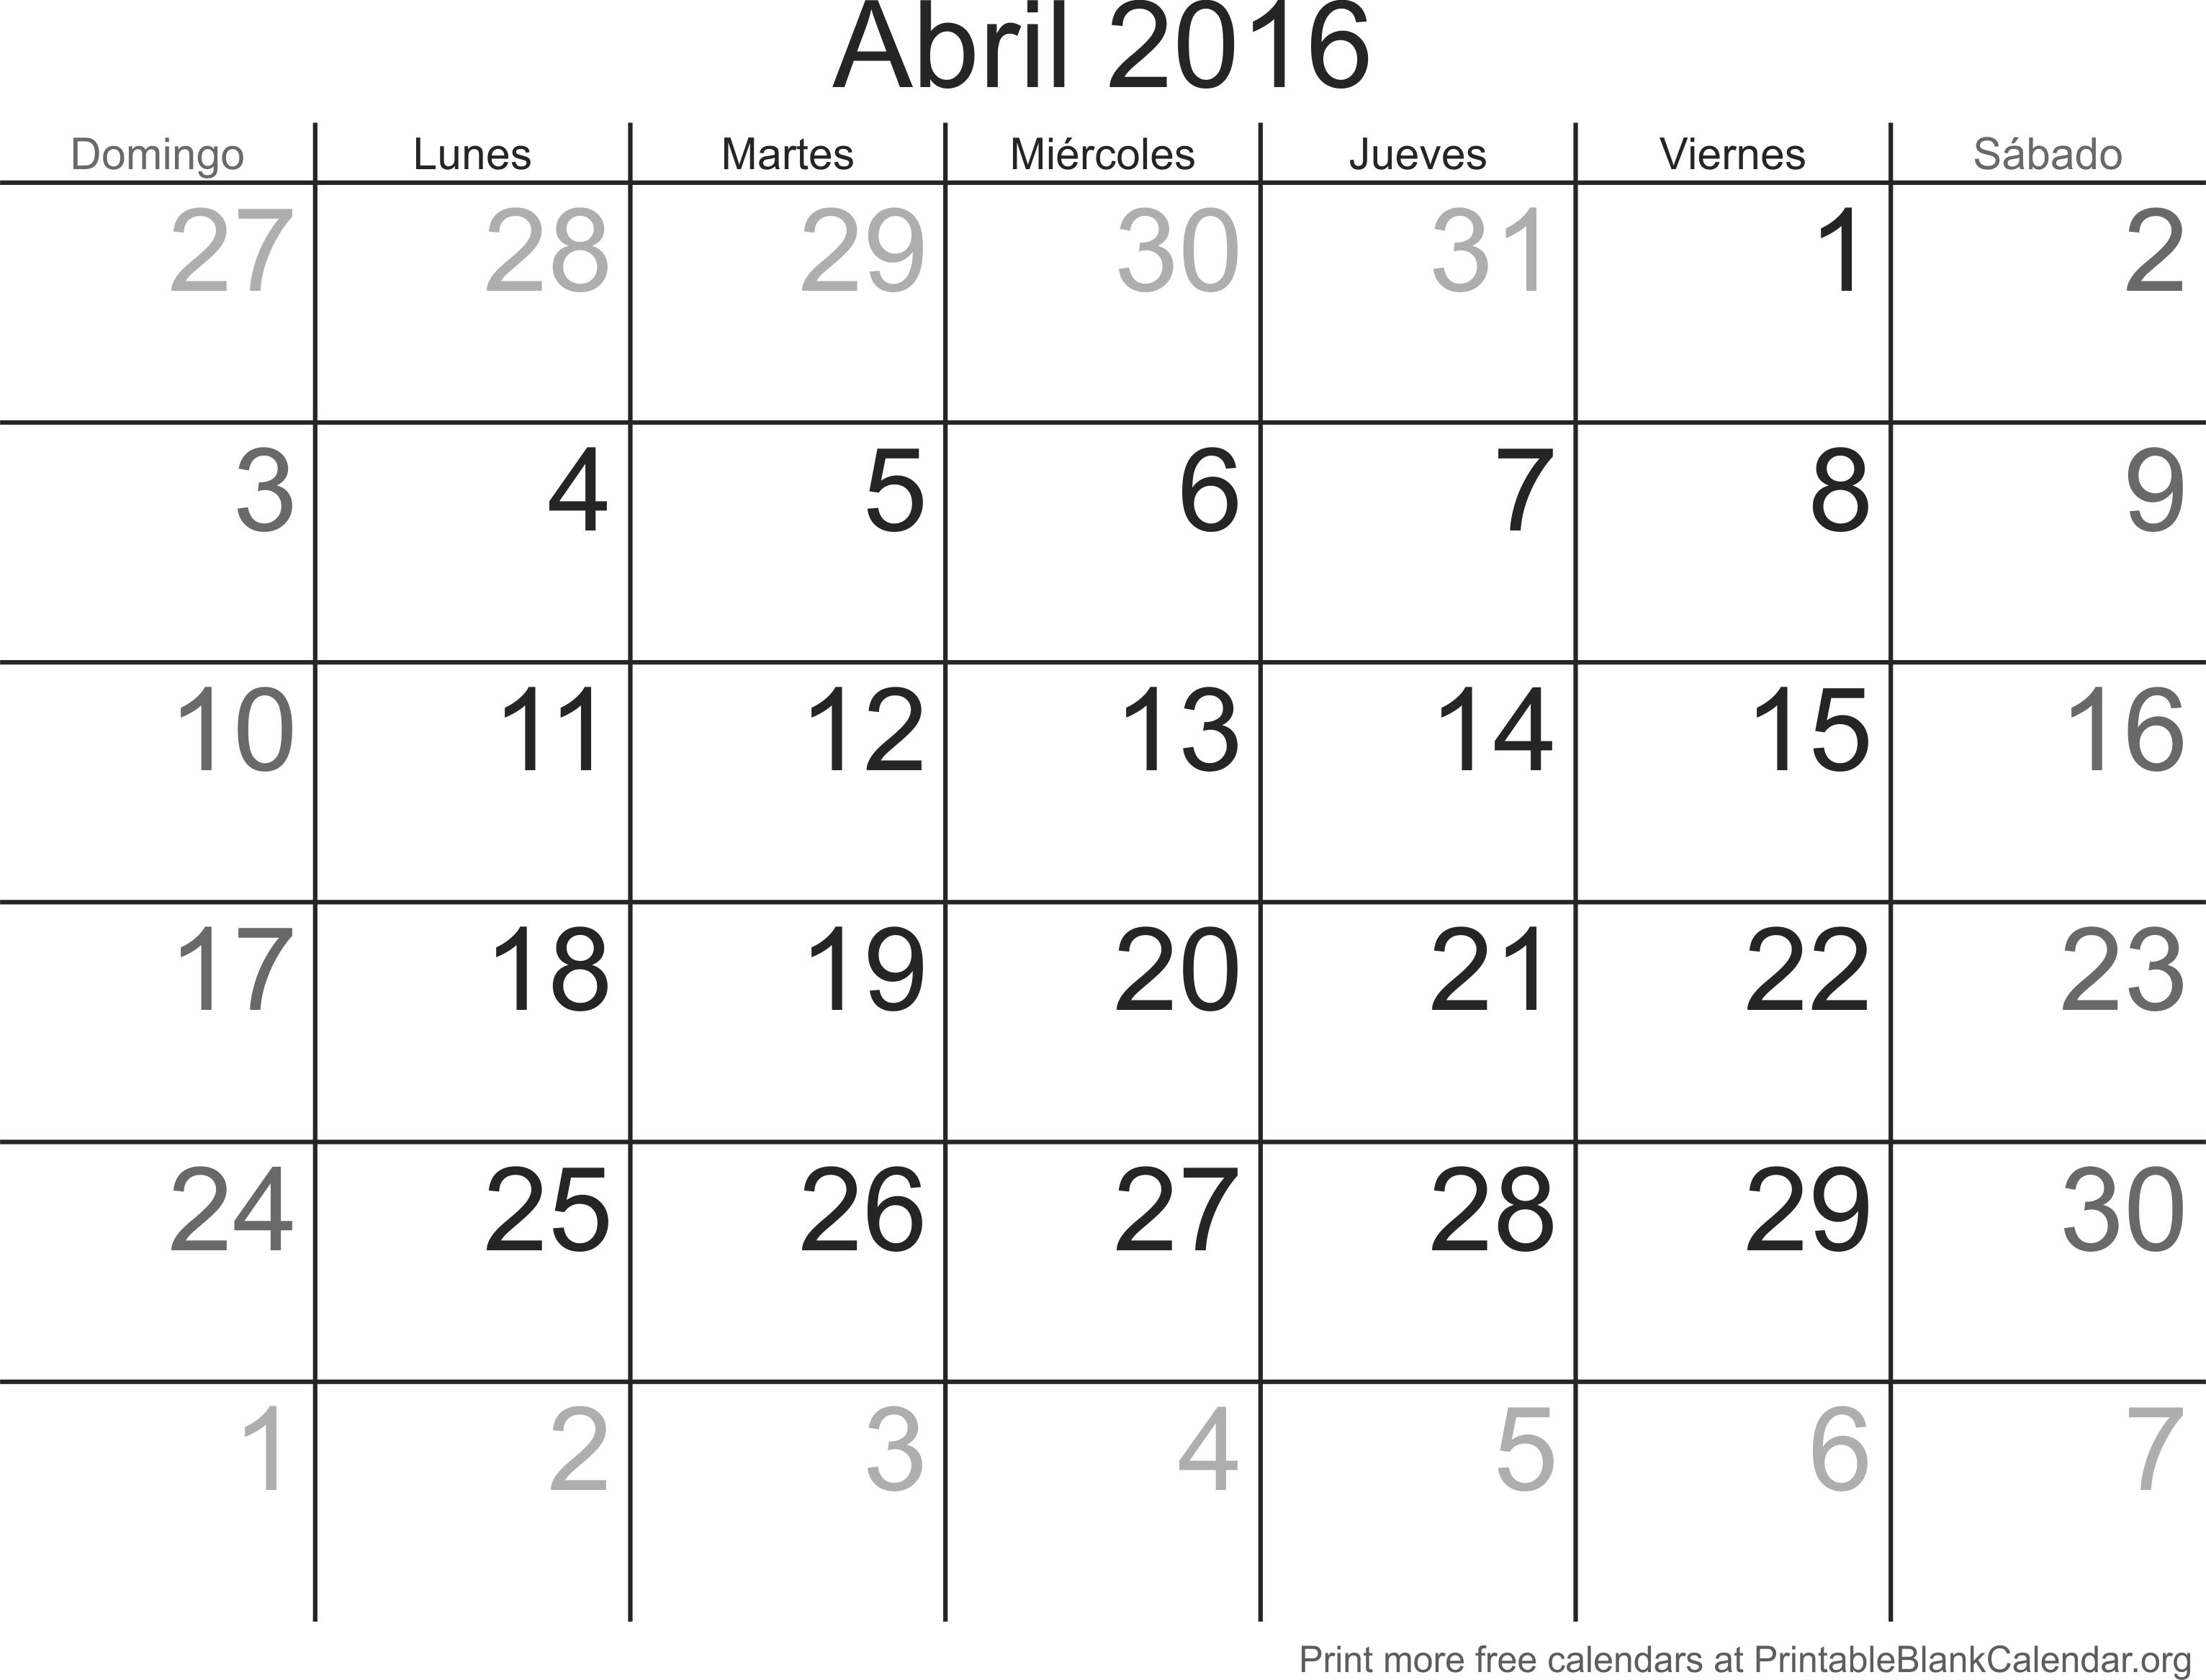 agenda abril 2016